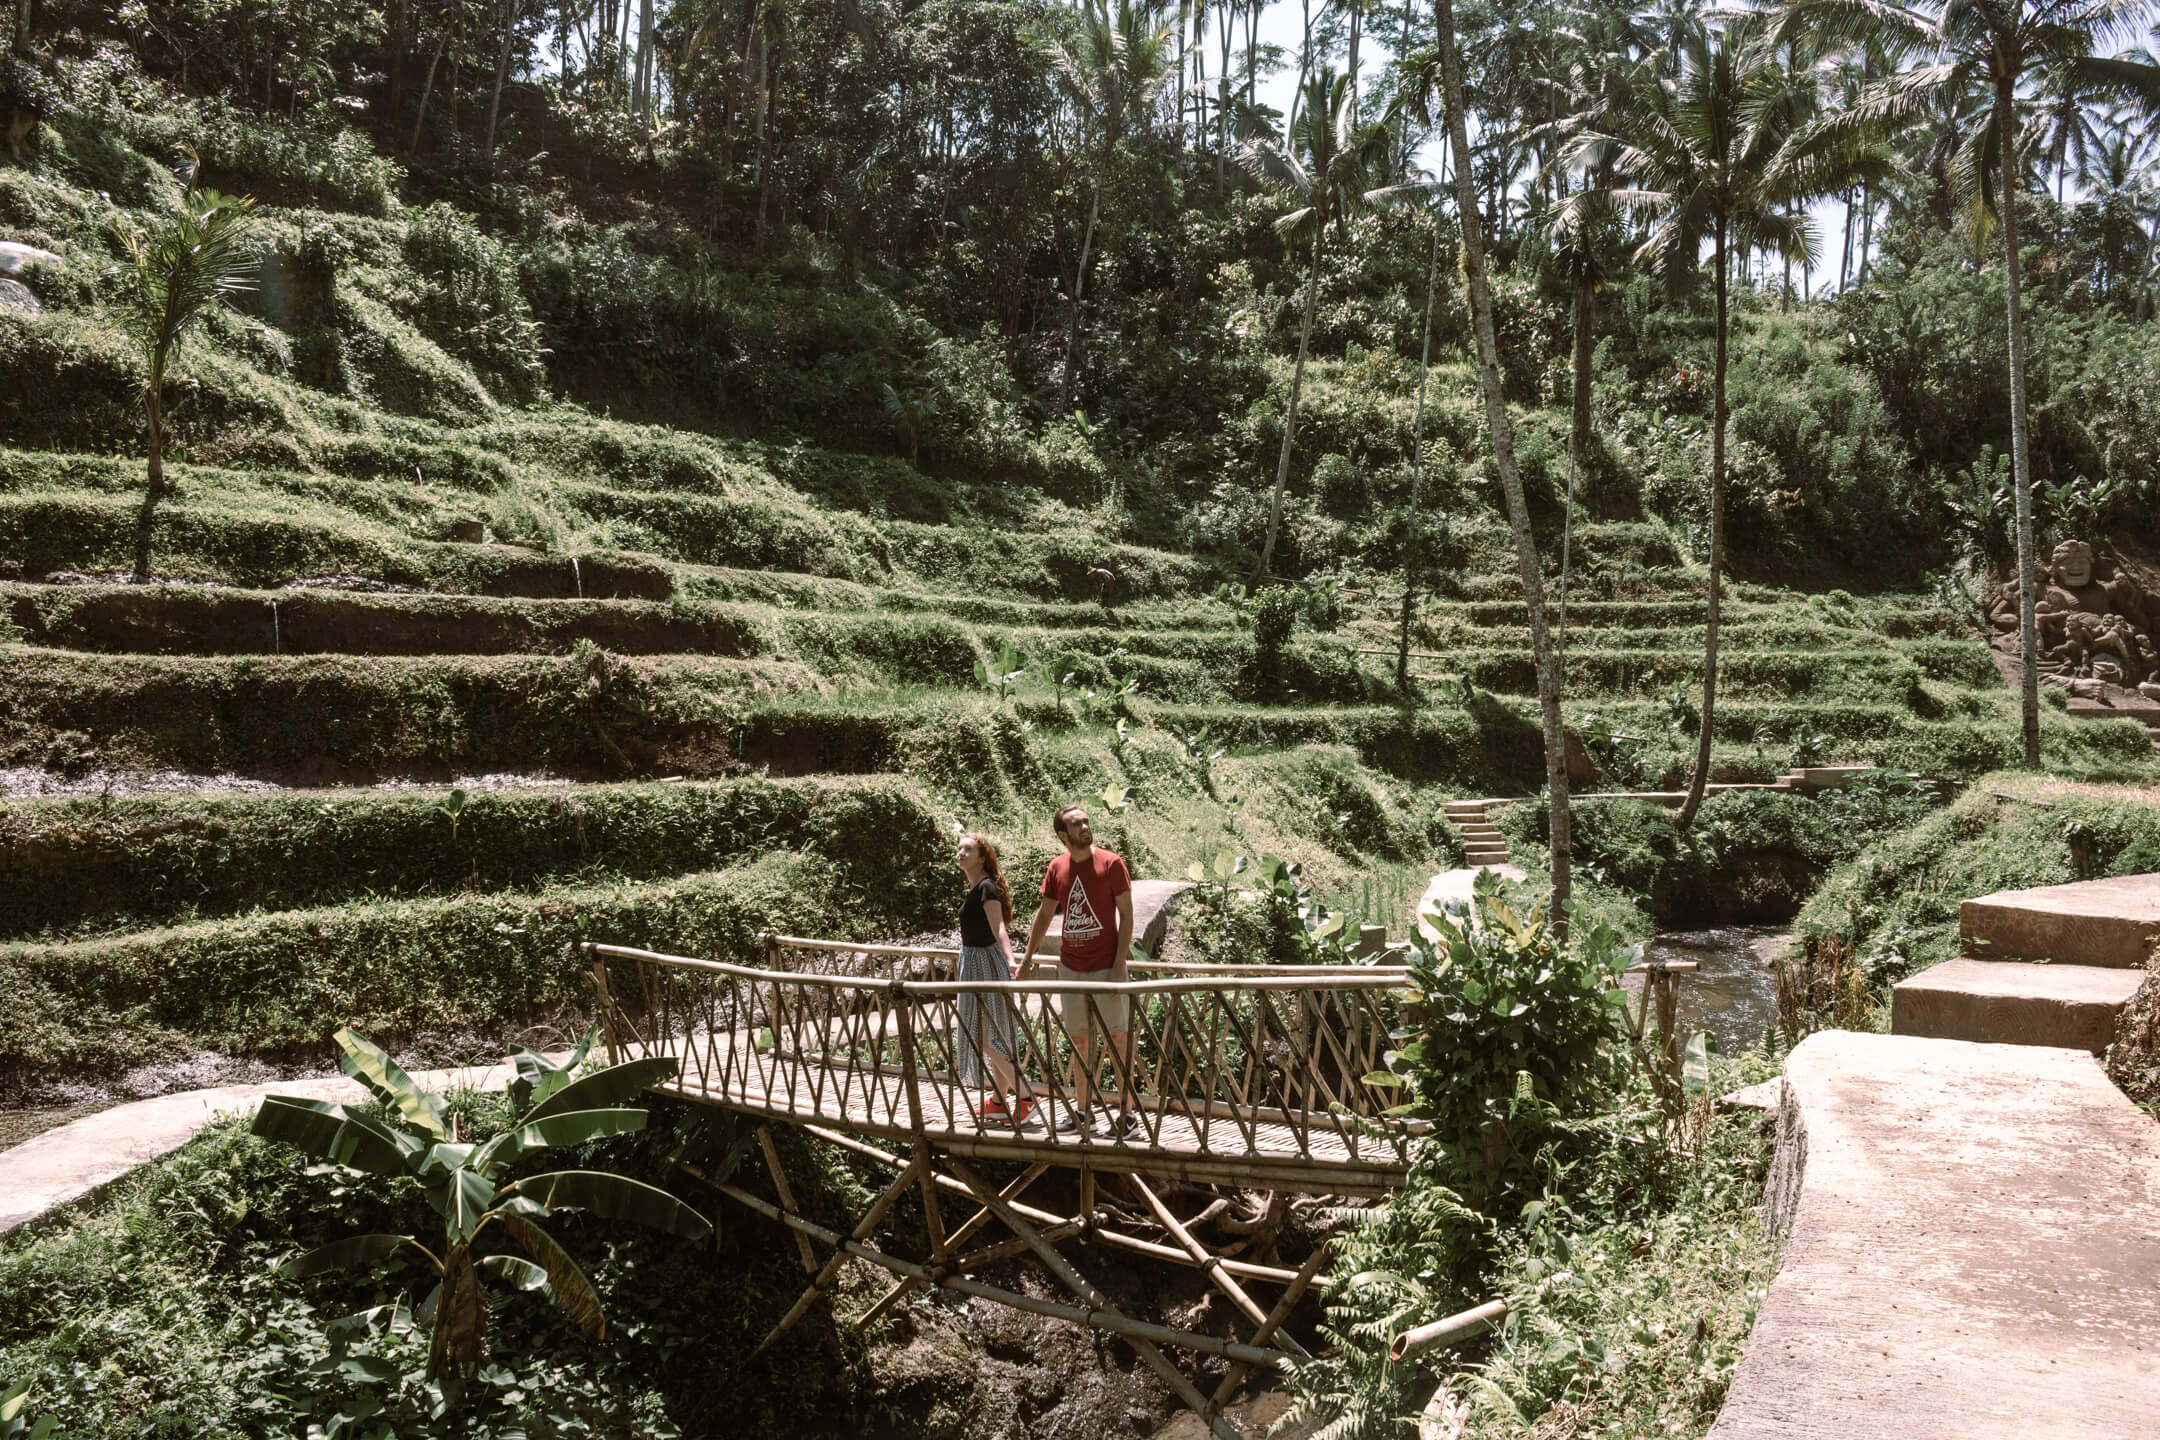 Bali Swings Rice Terrace in Ubud